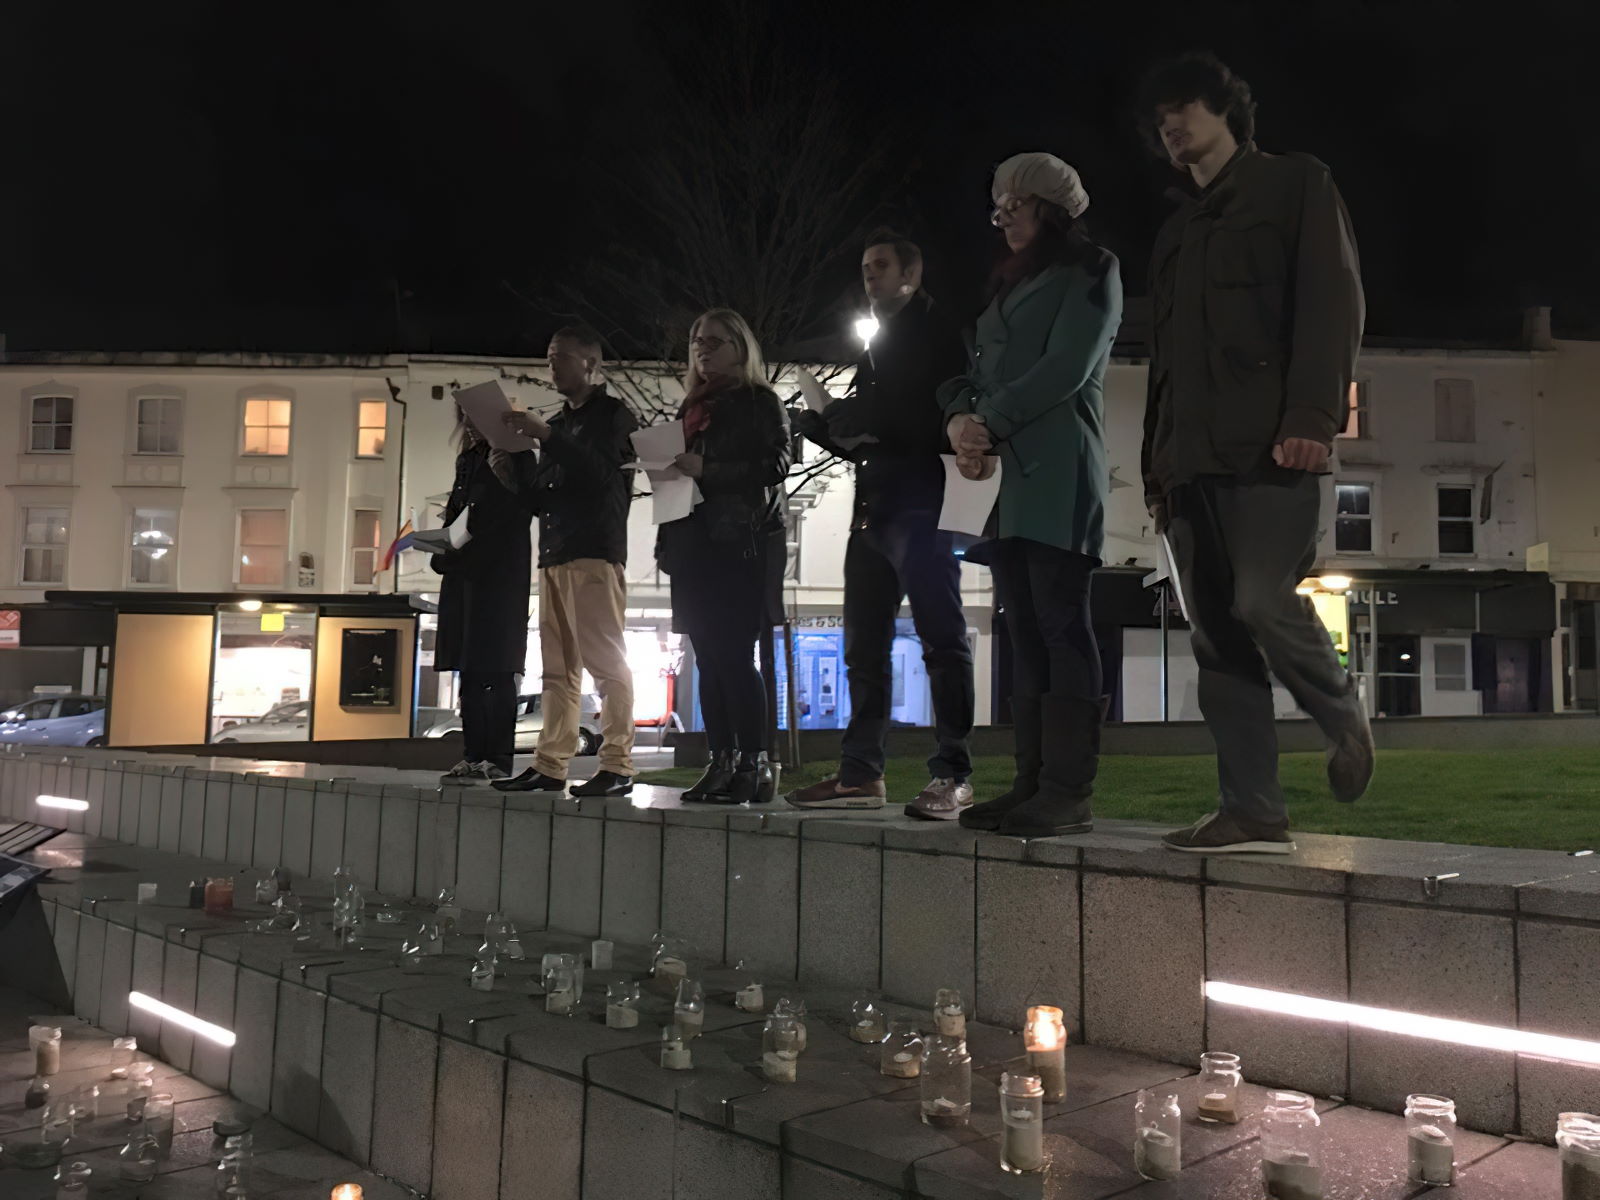 The TDoR vigil in Bournemouth in November 2015